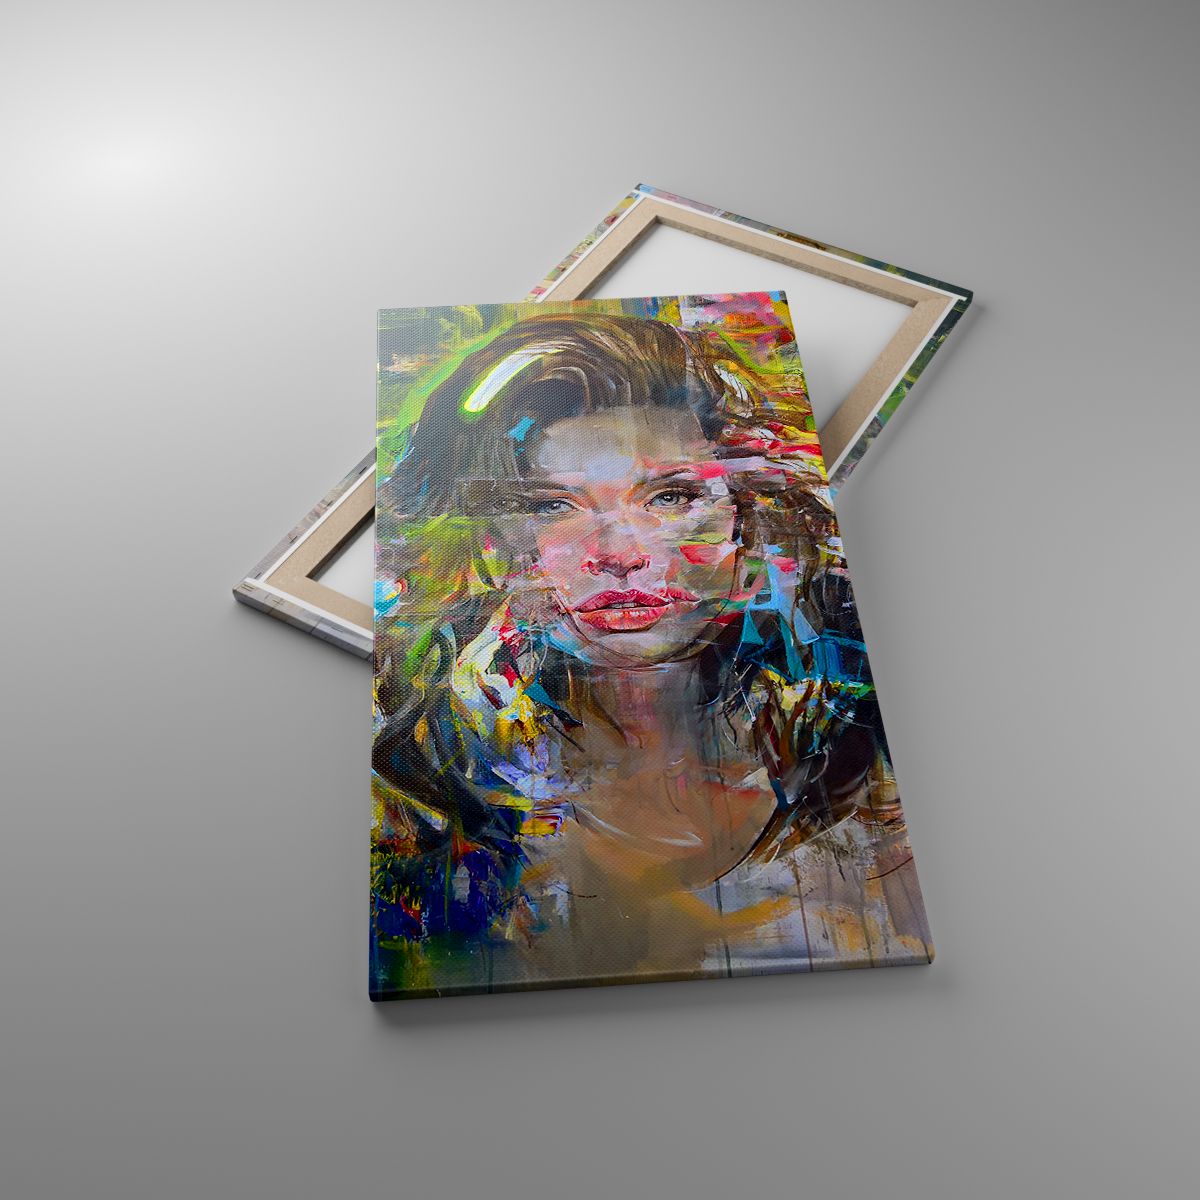 Leinwandbild Porträt Einer Frau, Leinwandbild Gesicht, Leinwandbild Abstraktion, Leinwandbild Frau, Leinwandbild Kunst